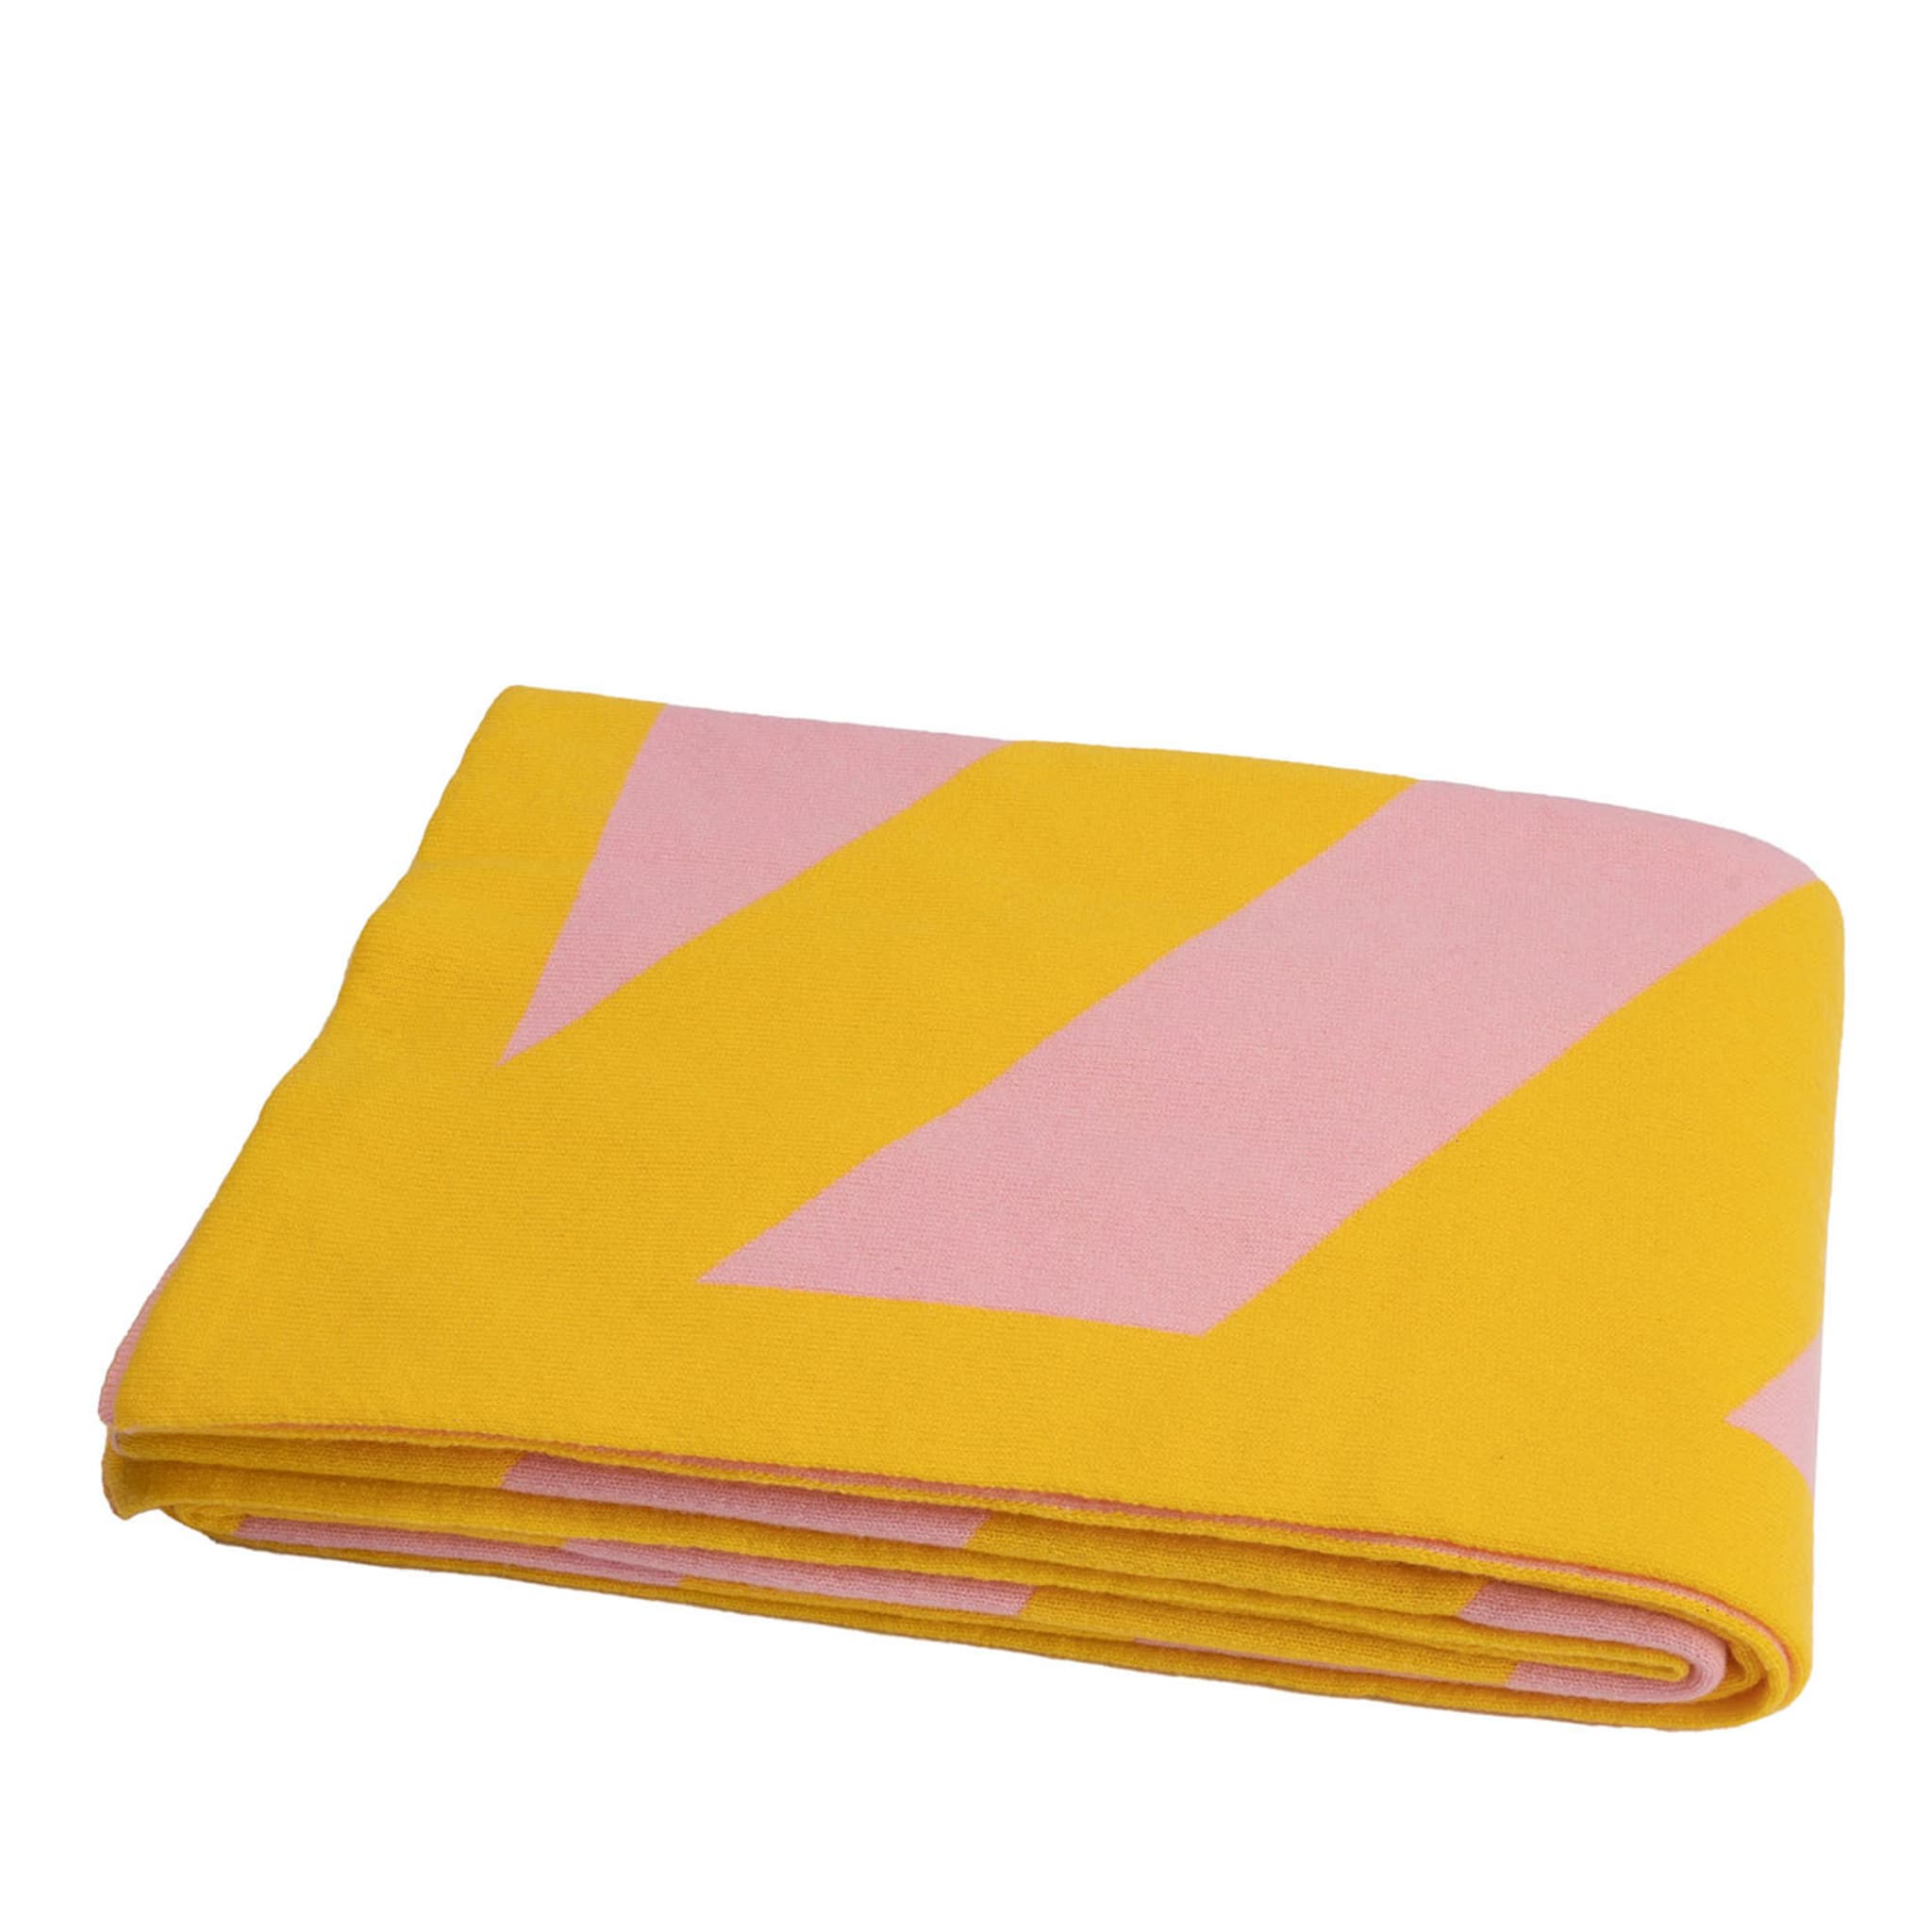 Coperta giallo e rosa Candy - Vista principale